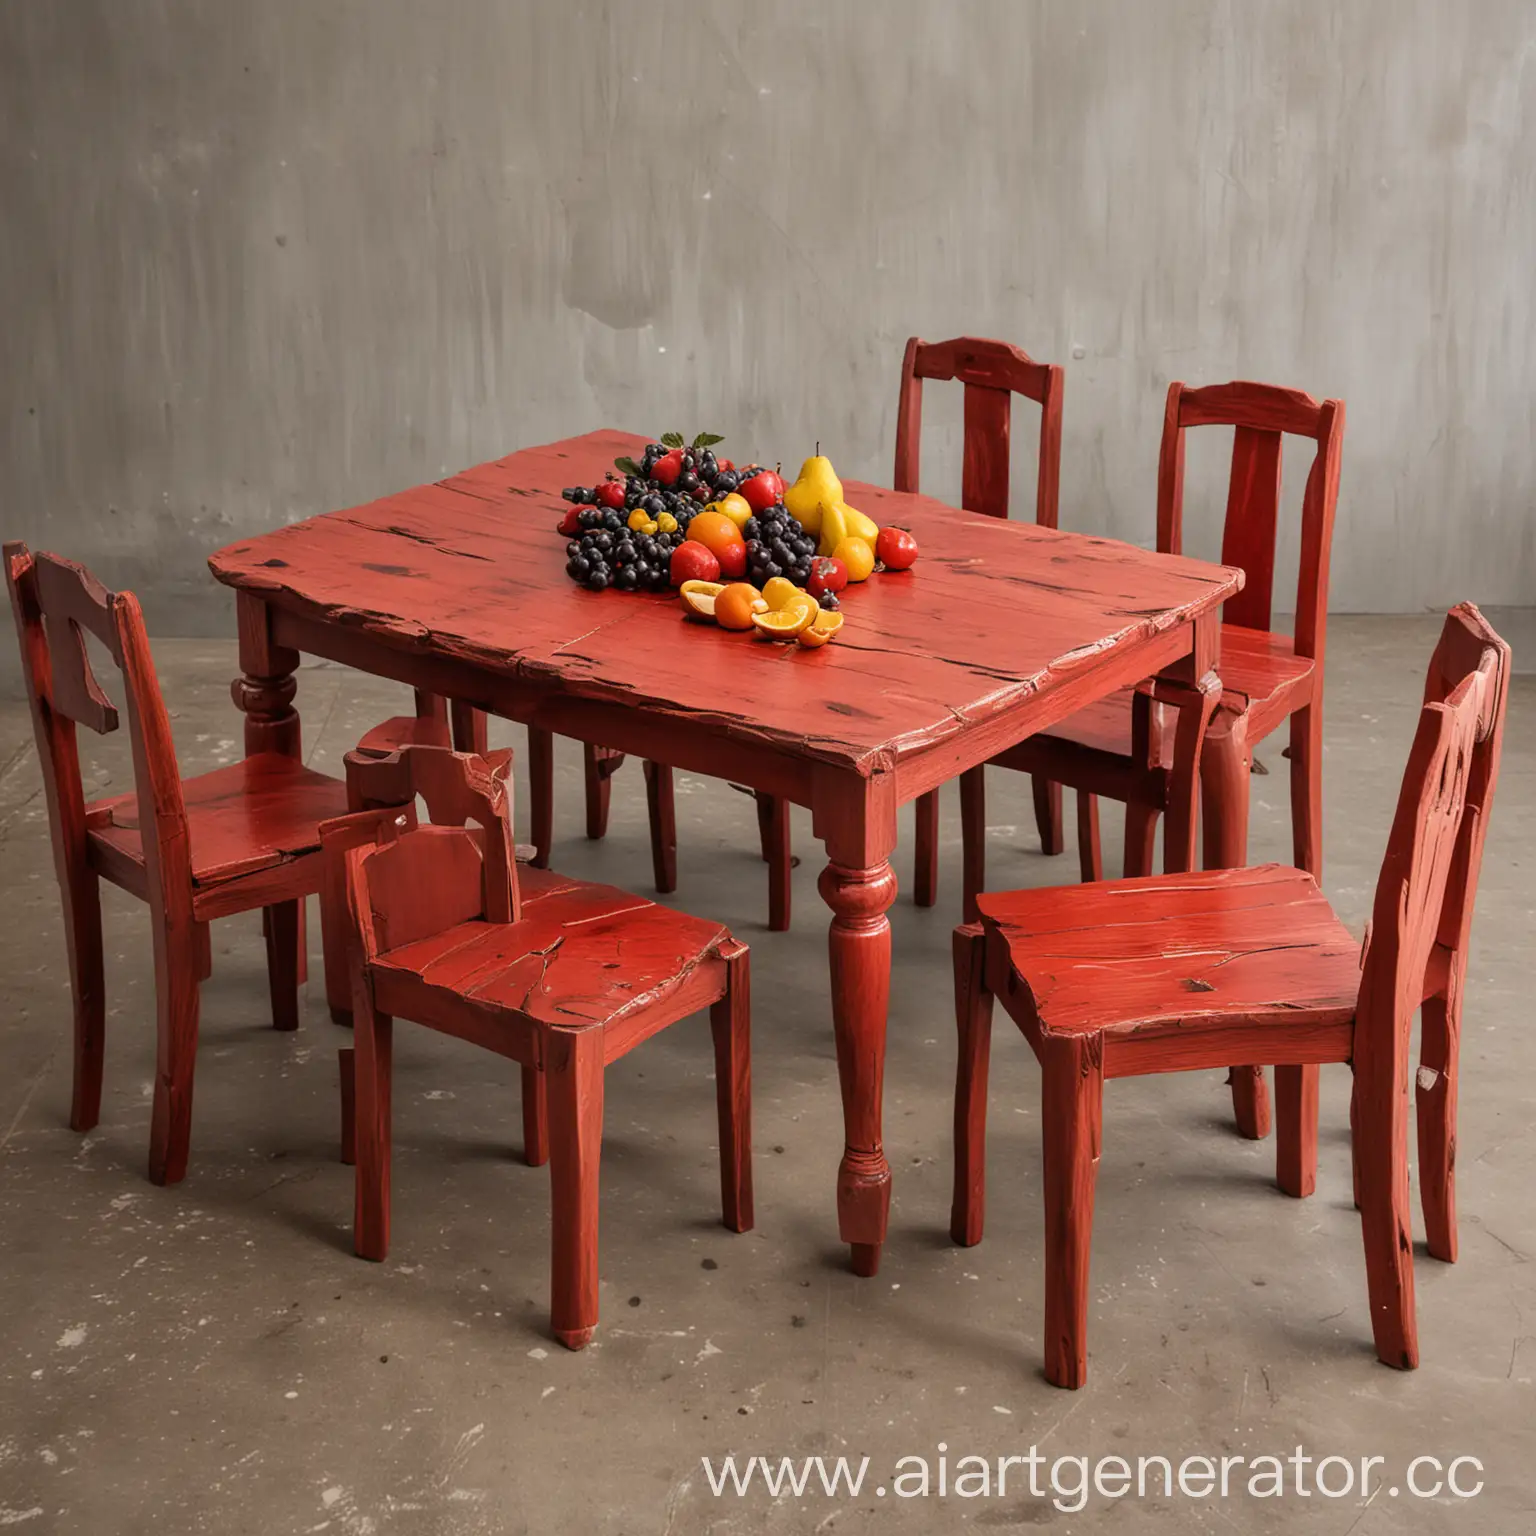 стол из красного дерева с шестью стульями и фруктами на столе